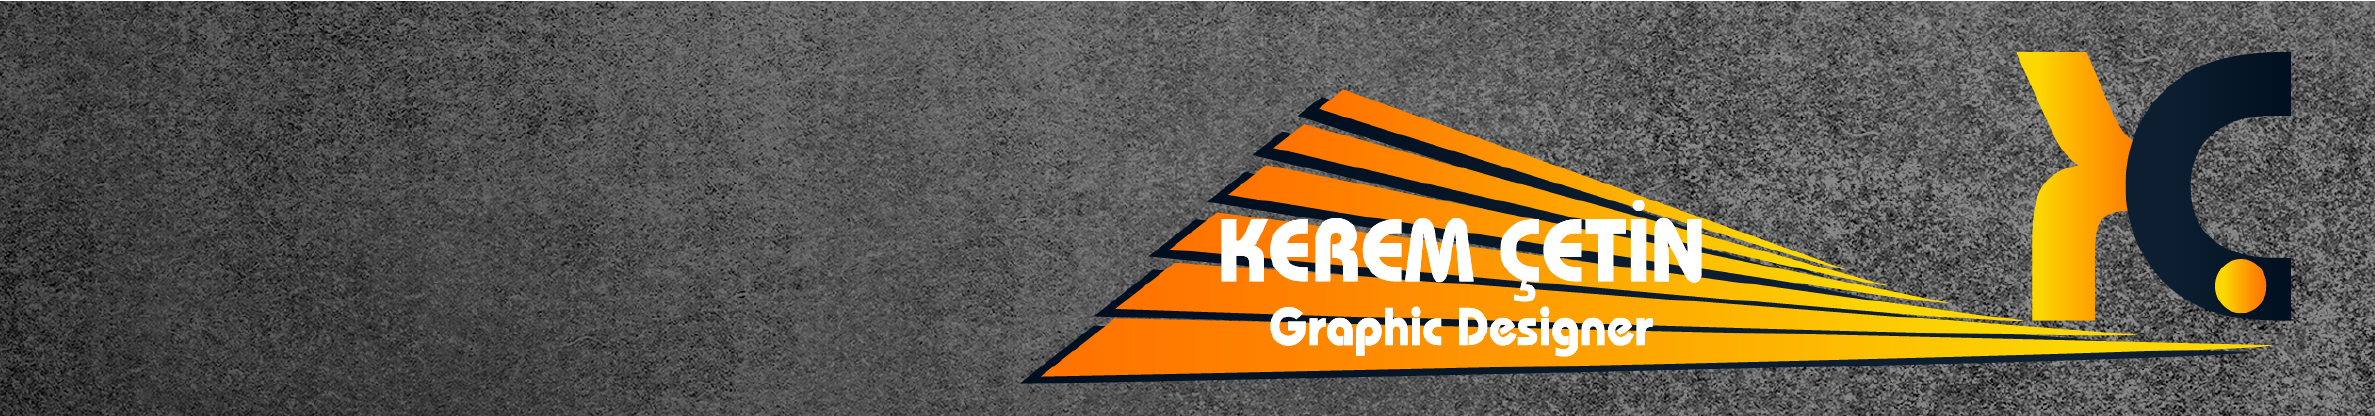 Kerem Çetin's profile banner